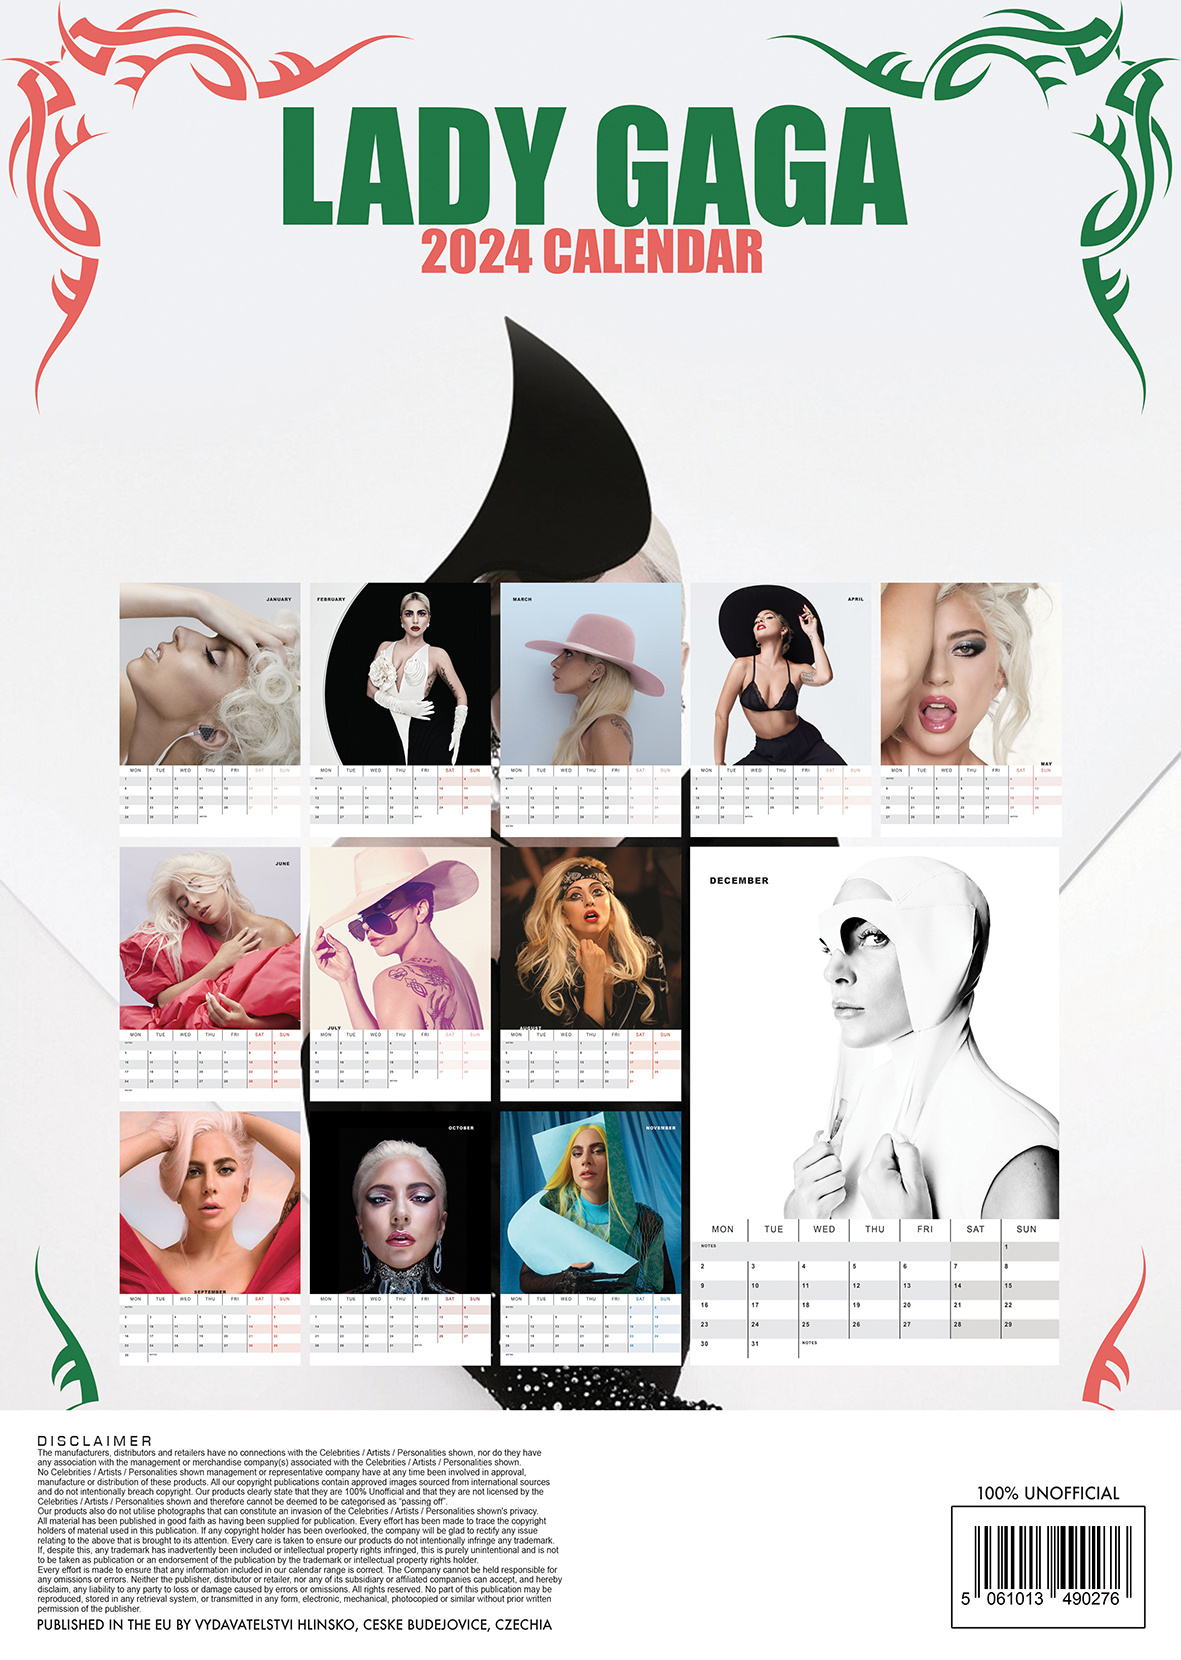 Comprar el Calendario Lady Gaga 2024 sólo tiene que pedirlo en línea